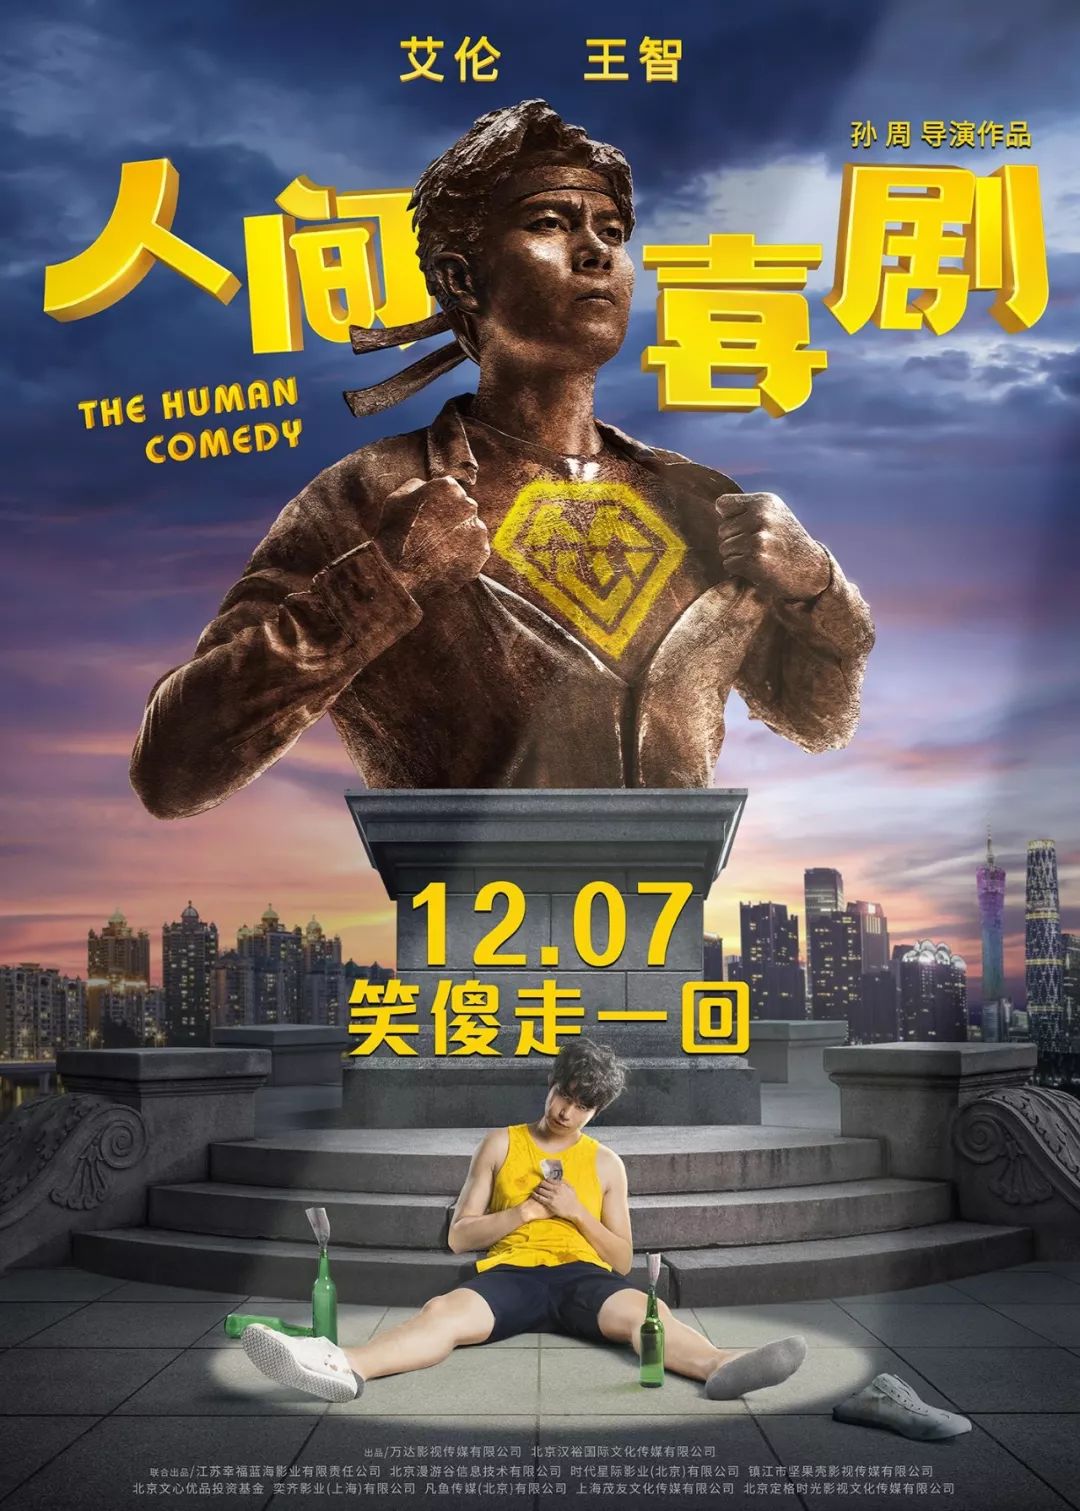 【即將上映】《人間·喜劇》提檔12月7日，正面迎擊大片《海王》